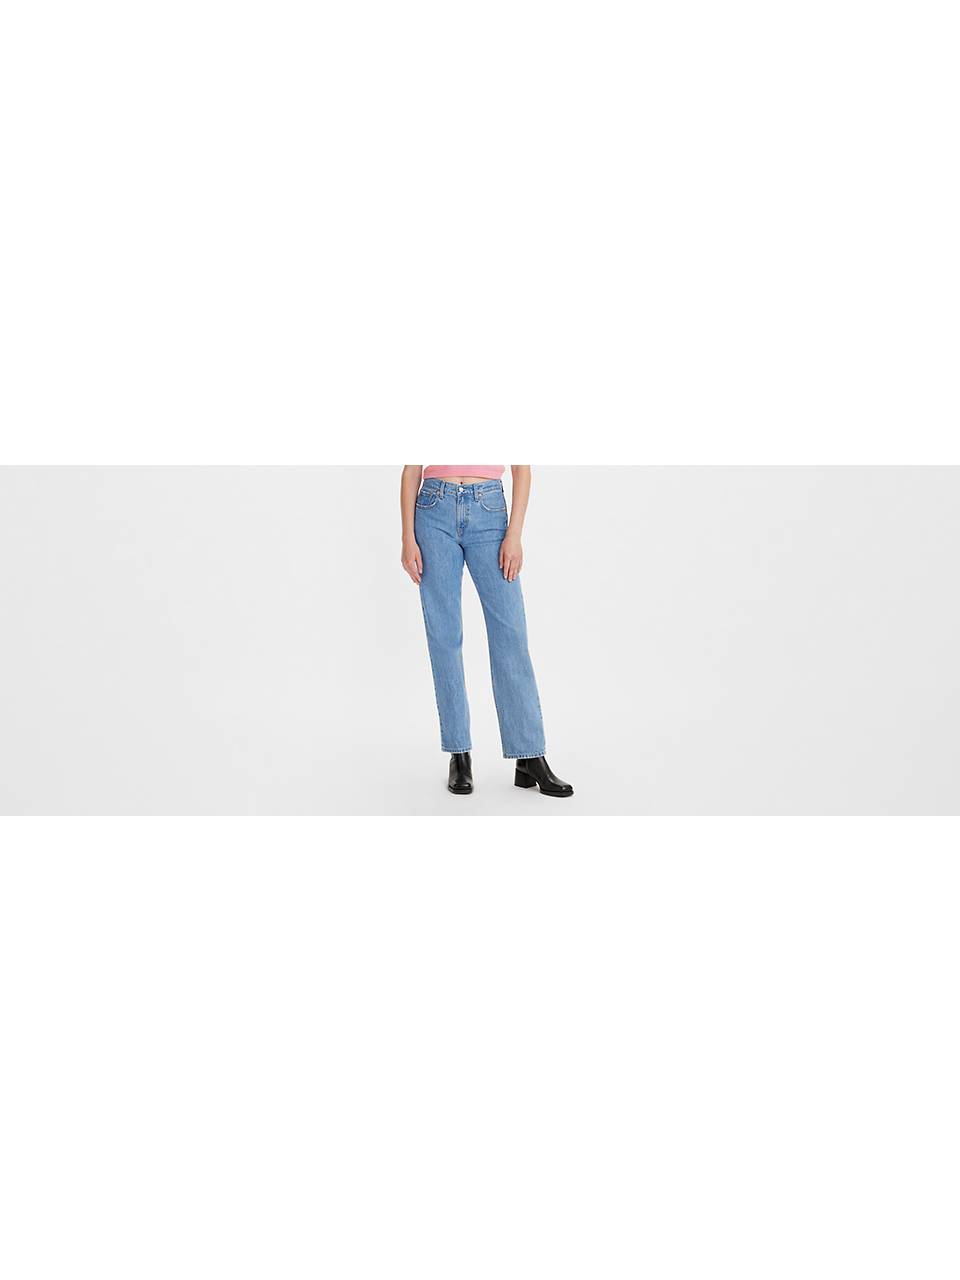 Women's Jeans: Shop Best Jeans for Women| Levi's® US